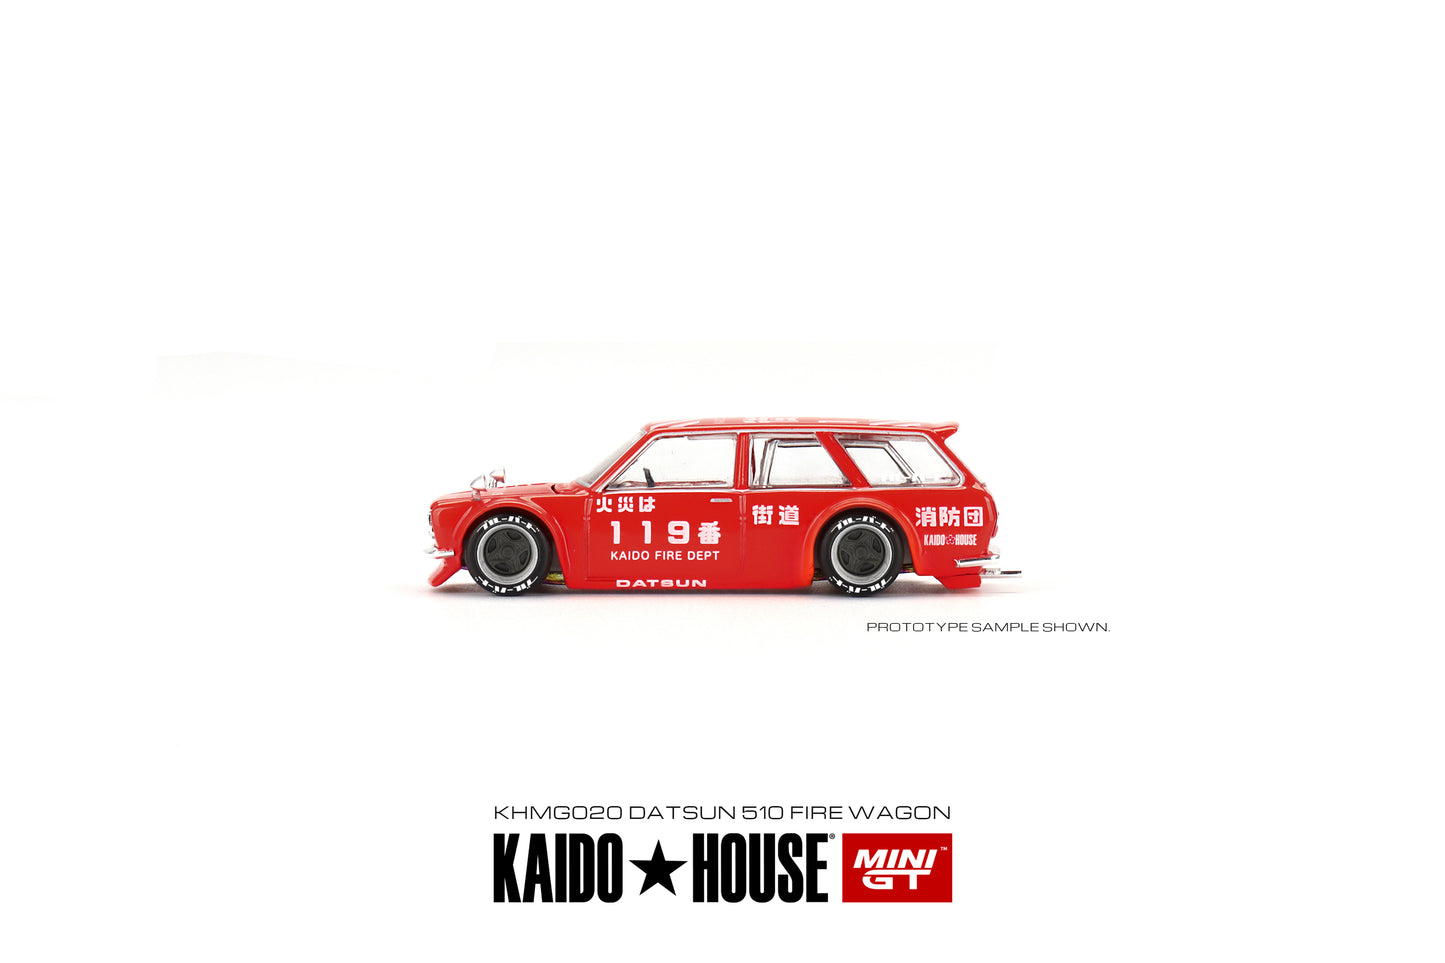 Mini GT Kaido House 020 Datsun Wagon Fire Dept Red 1:64